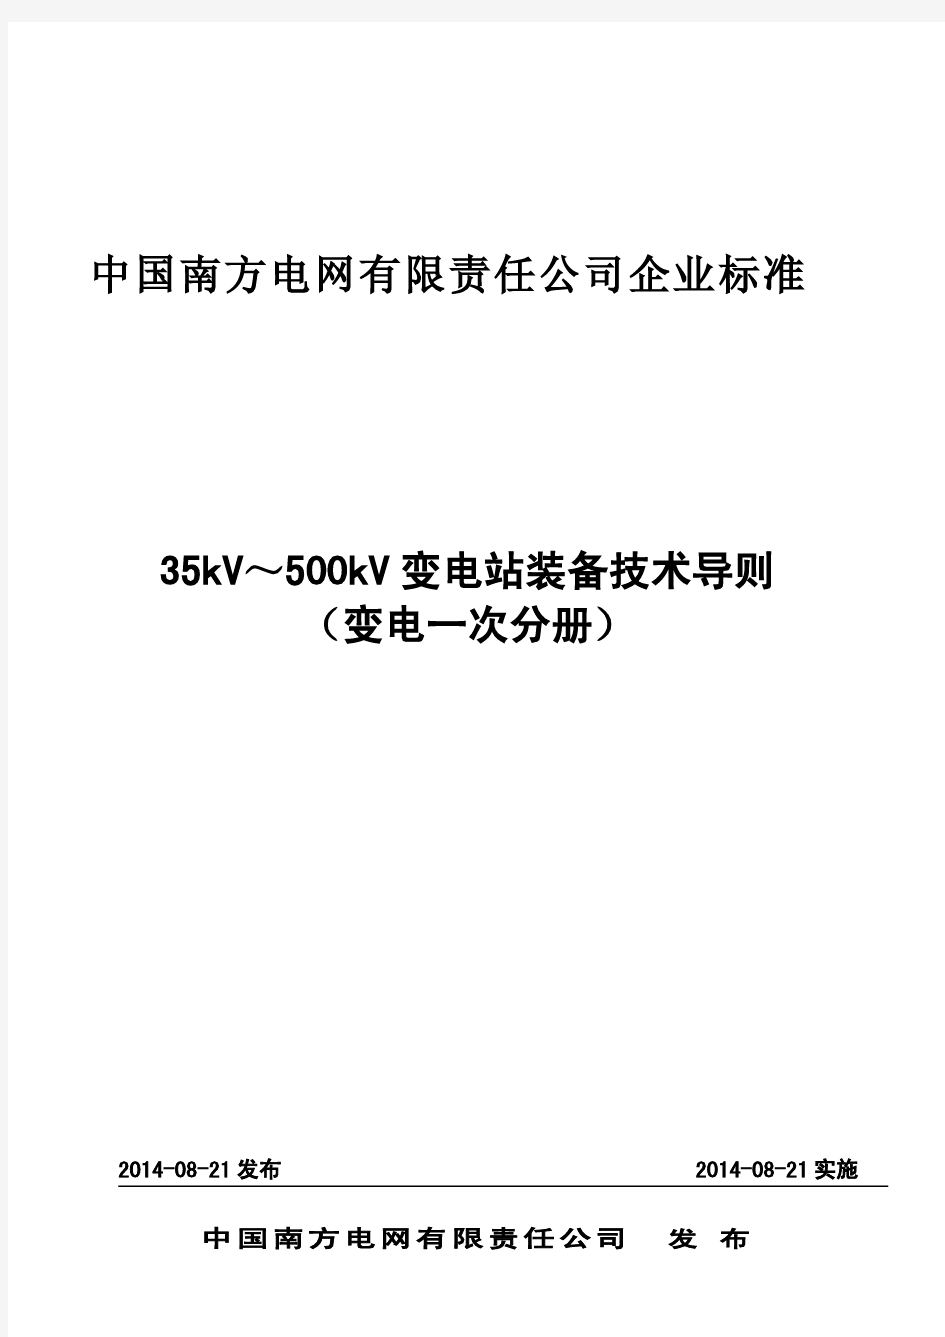 南方电网35kV～500kV变电站装备技术导则(变电一次分册)